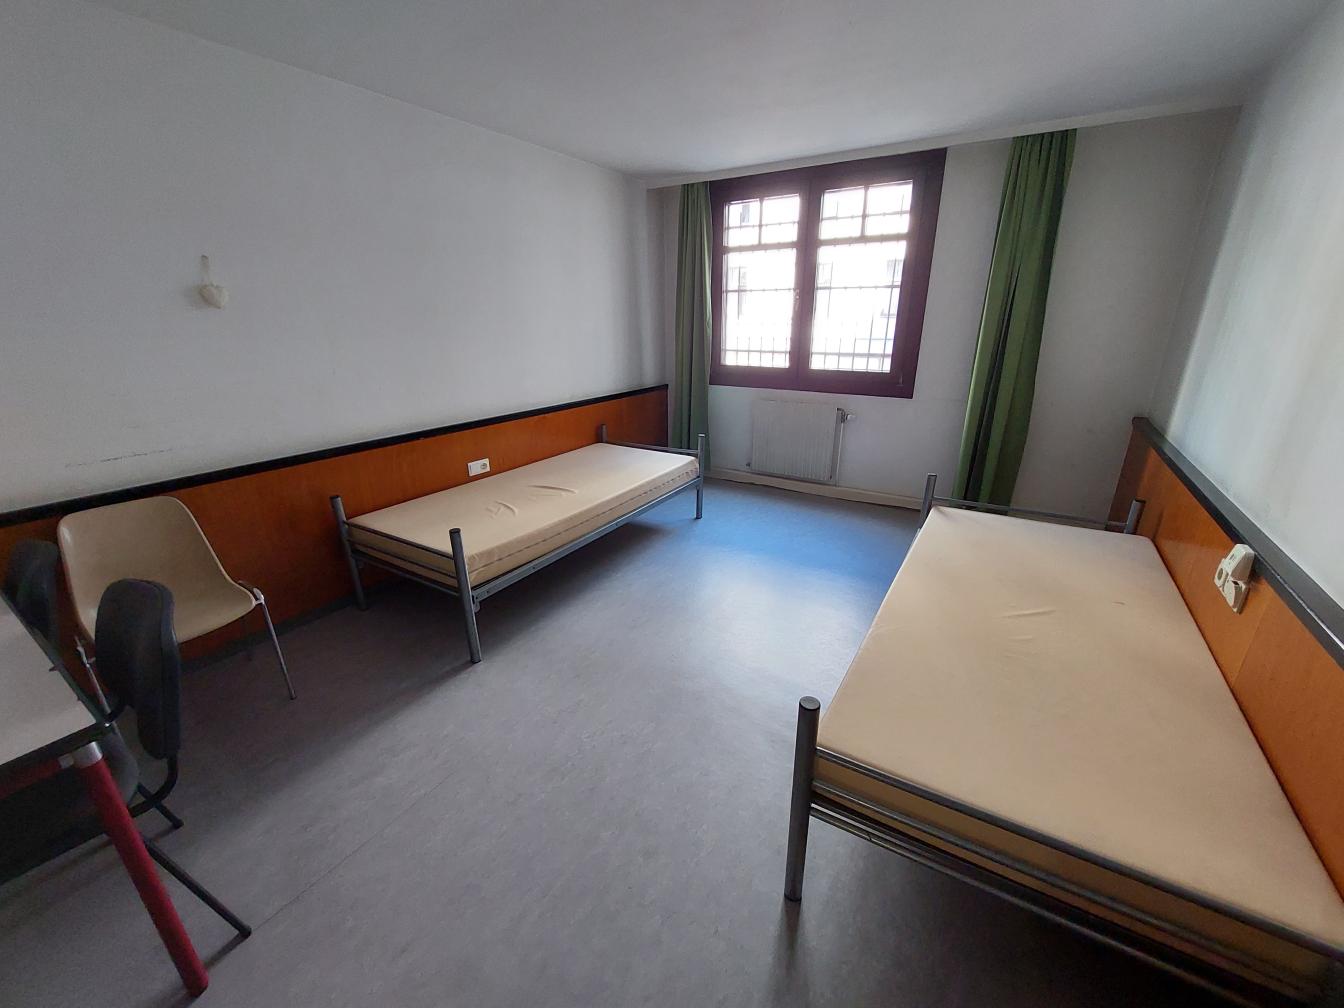 Schlafzimmer in der Flüchtlingsunterkunft